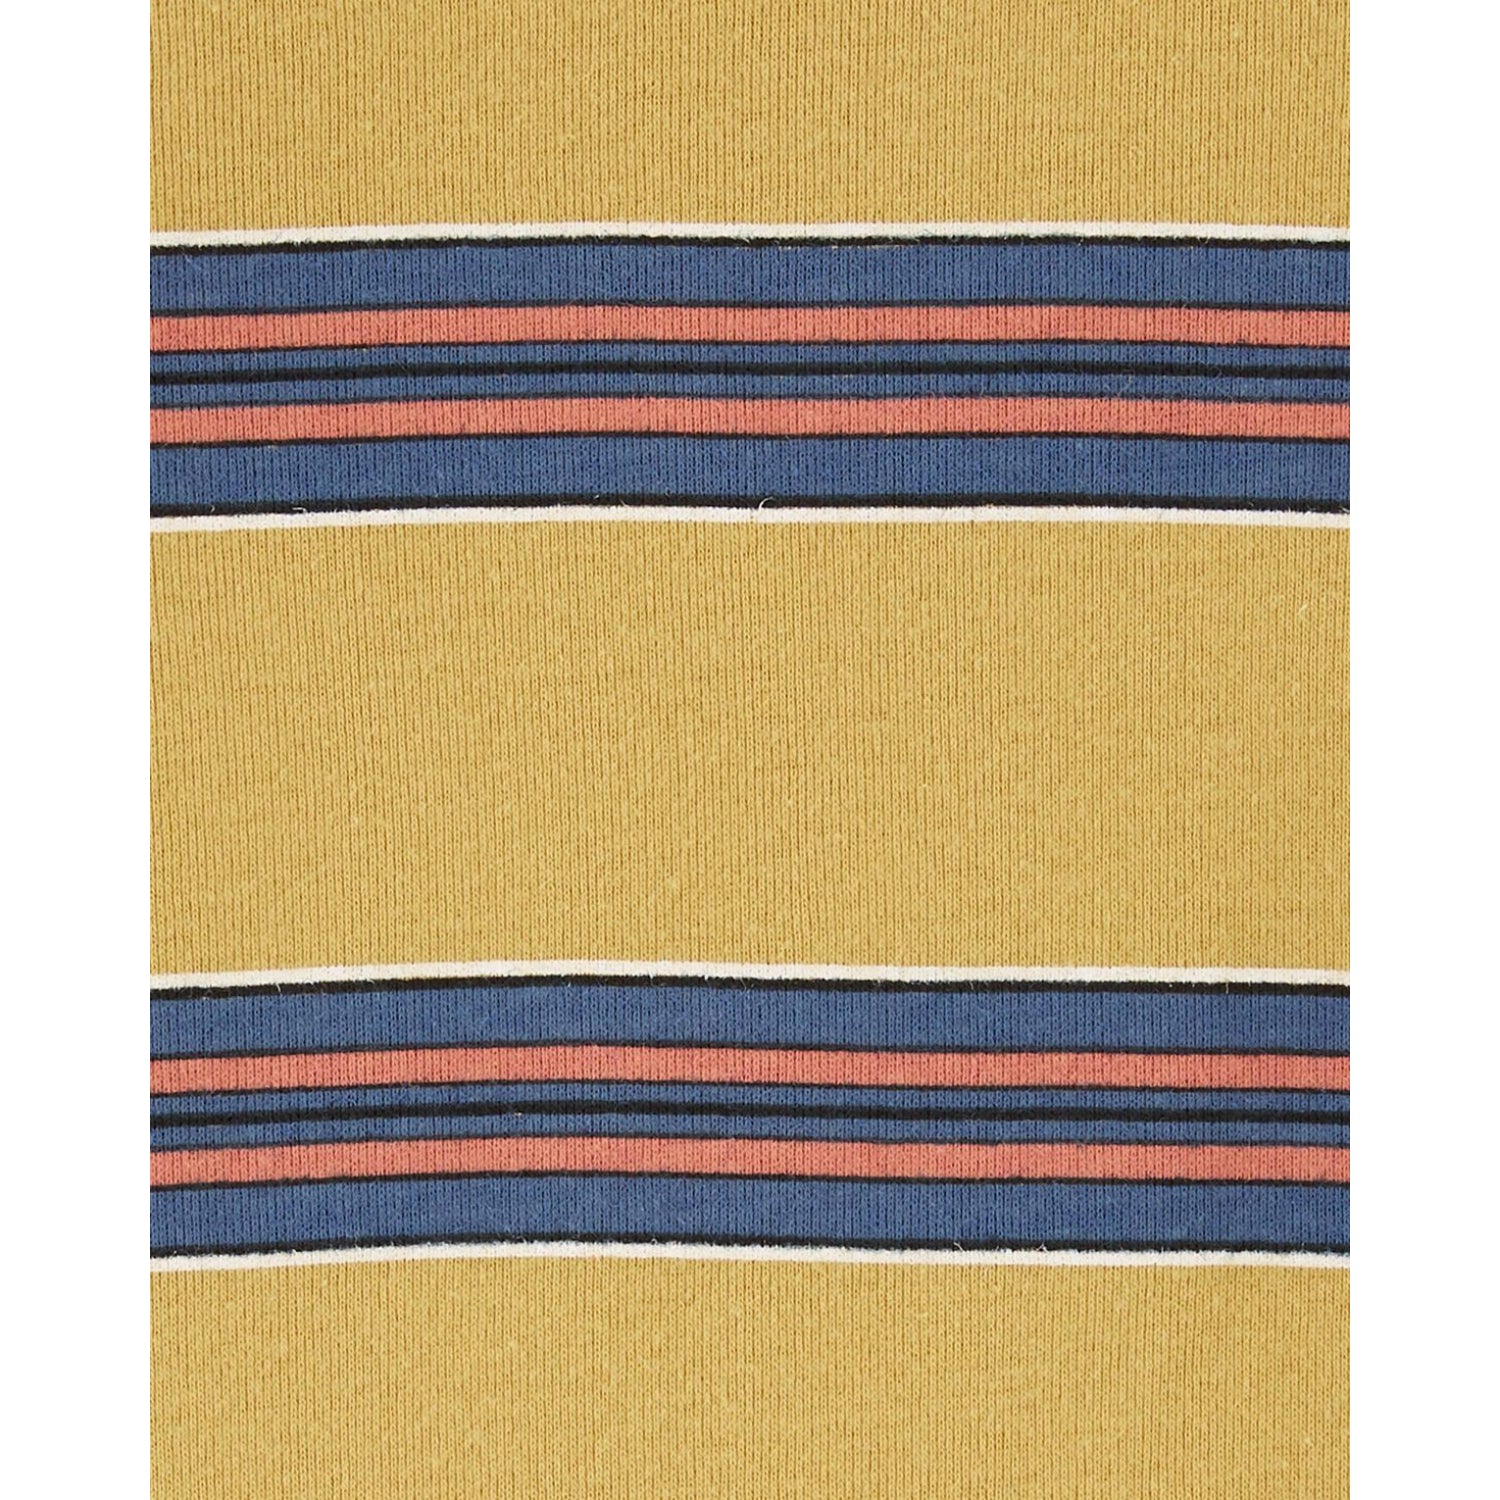 Carters Boys 2T-5T 4-Piece Stripes & Cars 100% Snug Fit Cotton Pajamas